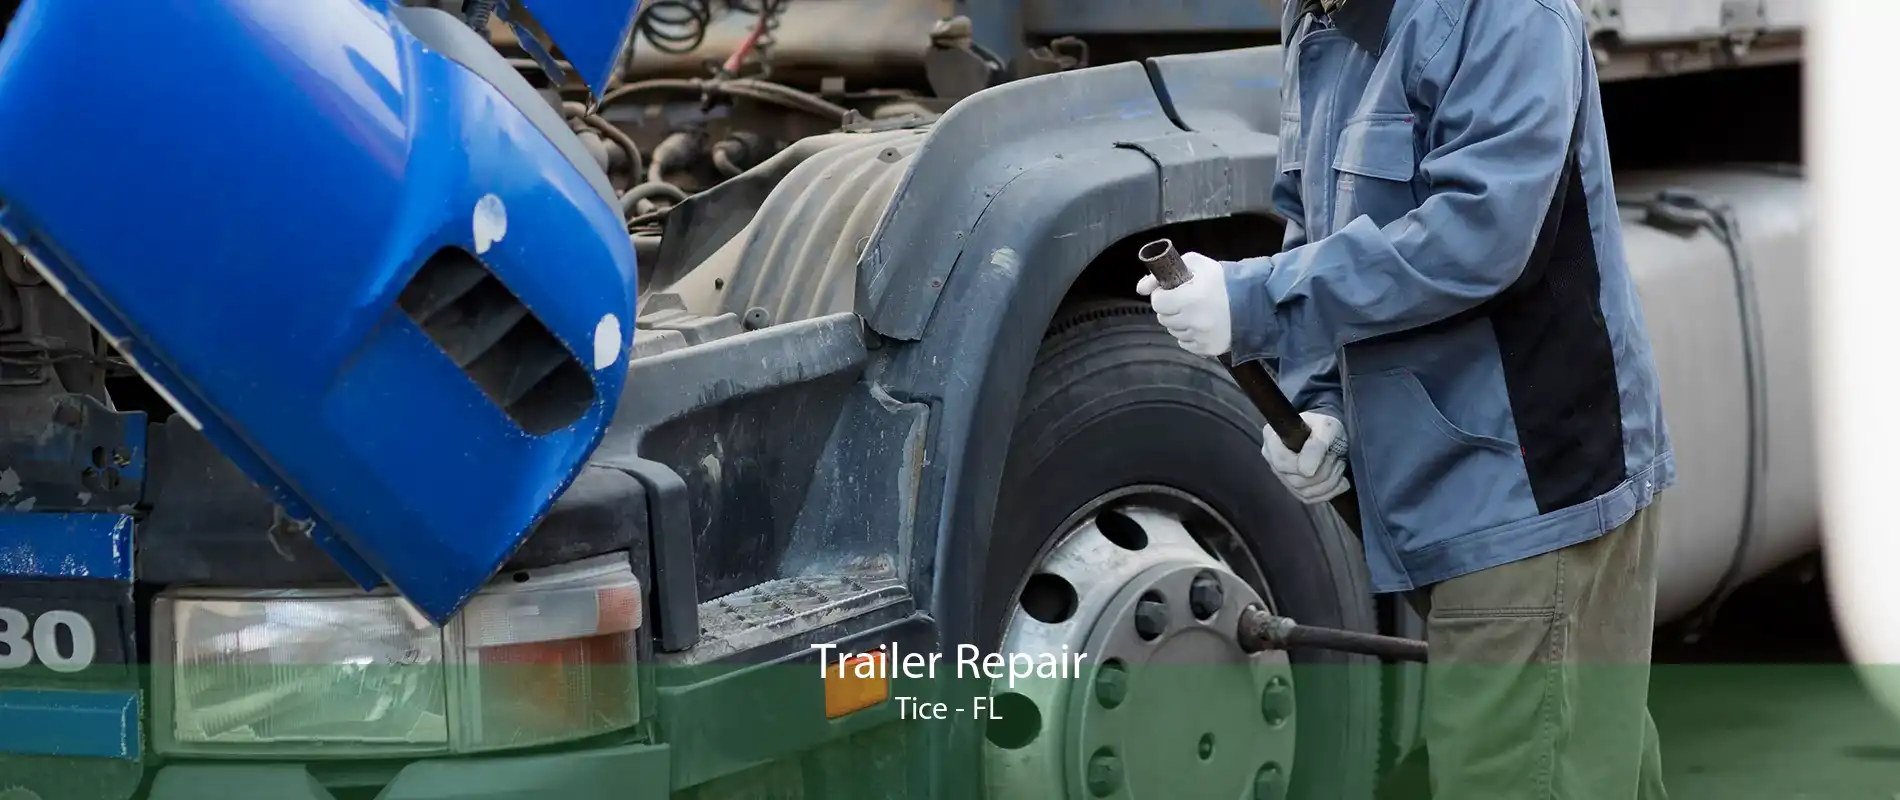 Trailer Repair Tice - FL